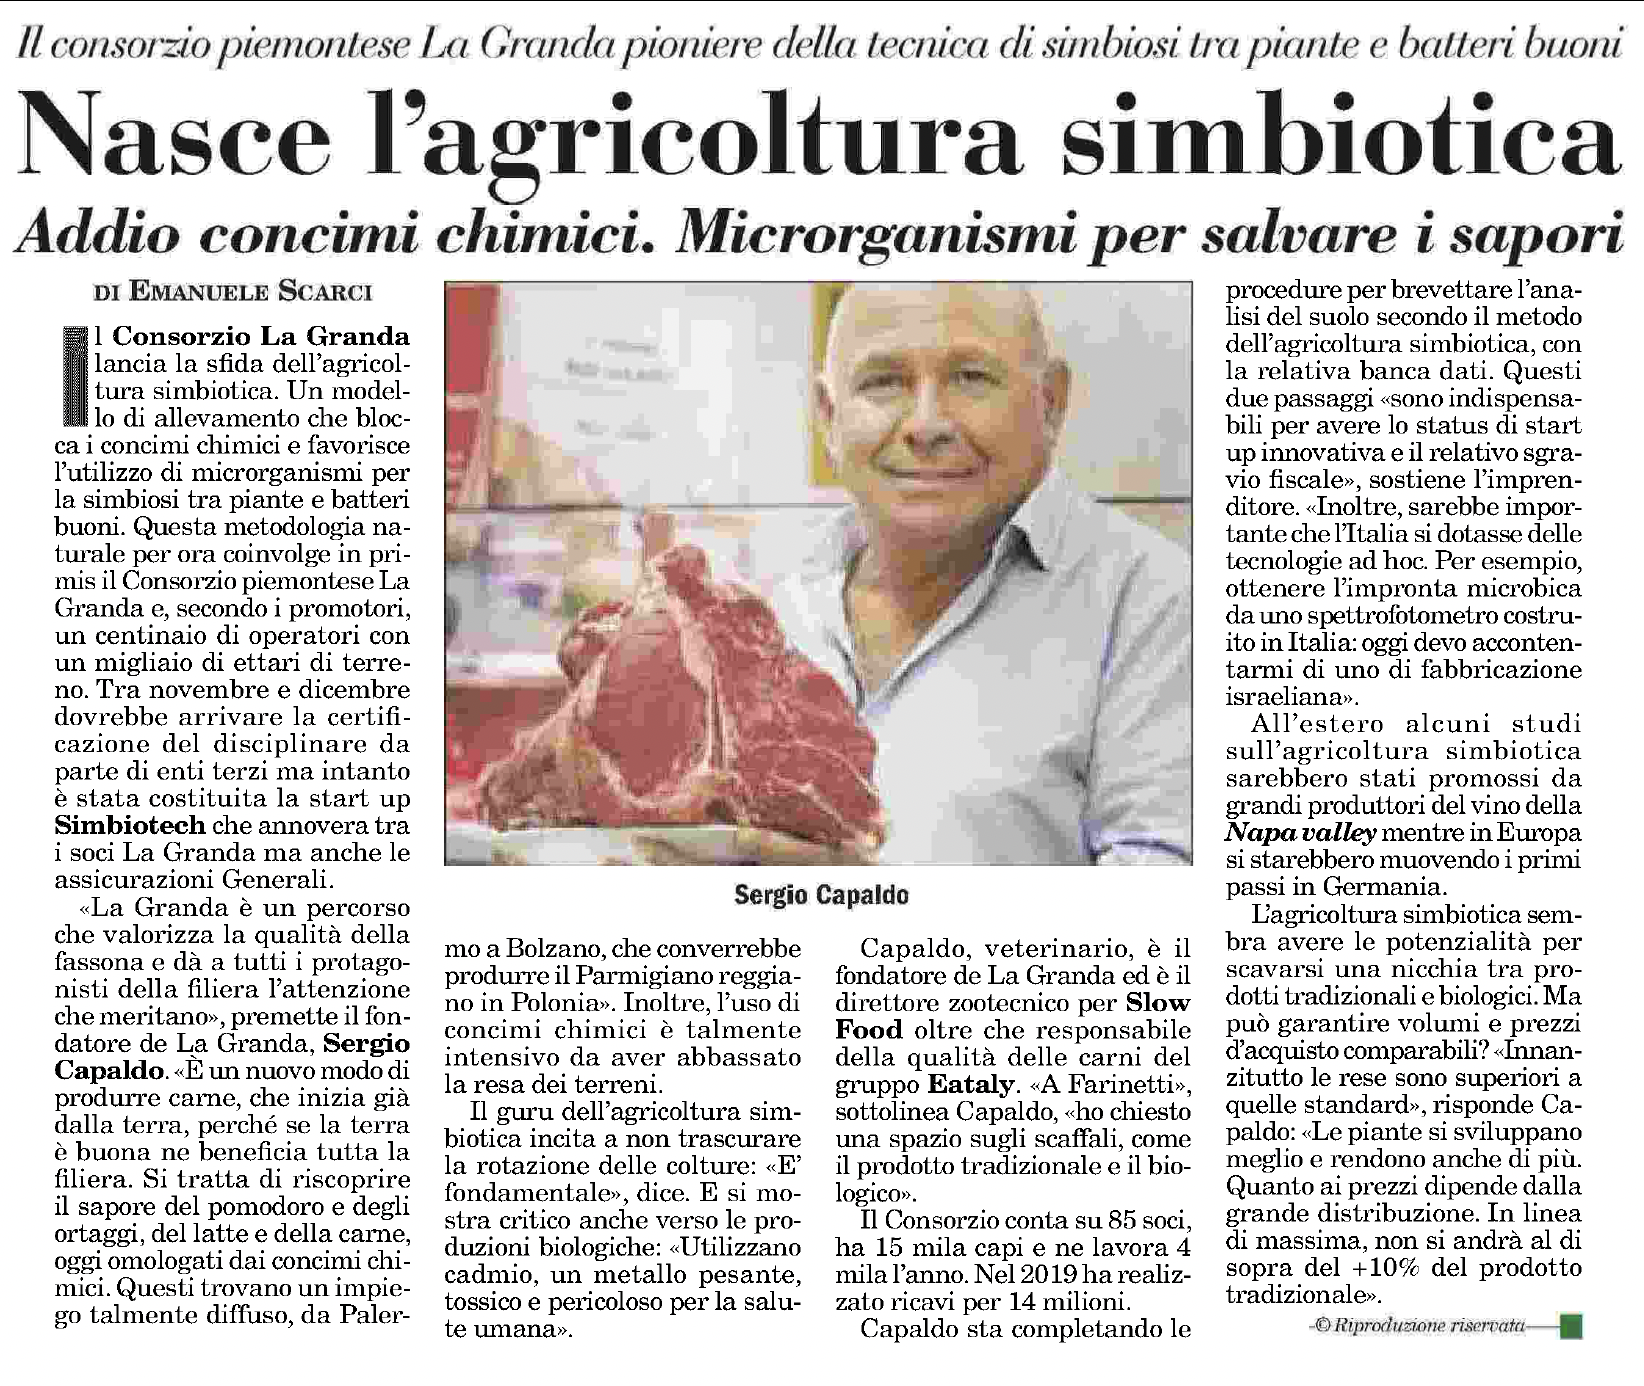 ItaliaOggi_NasceAgricolturaSimbiotica